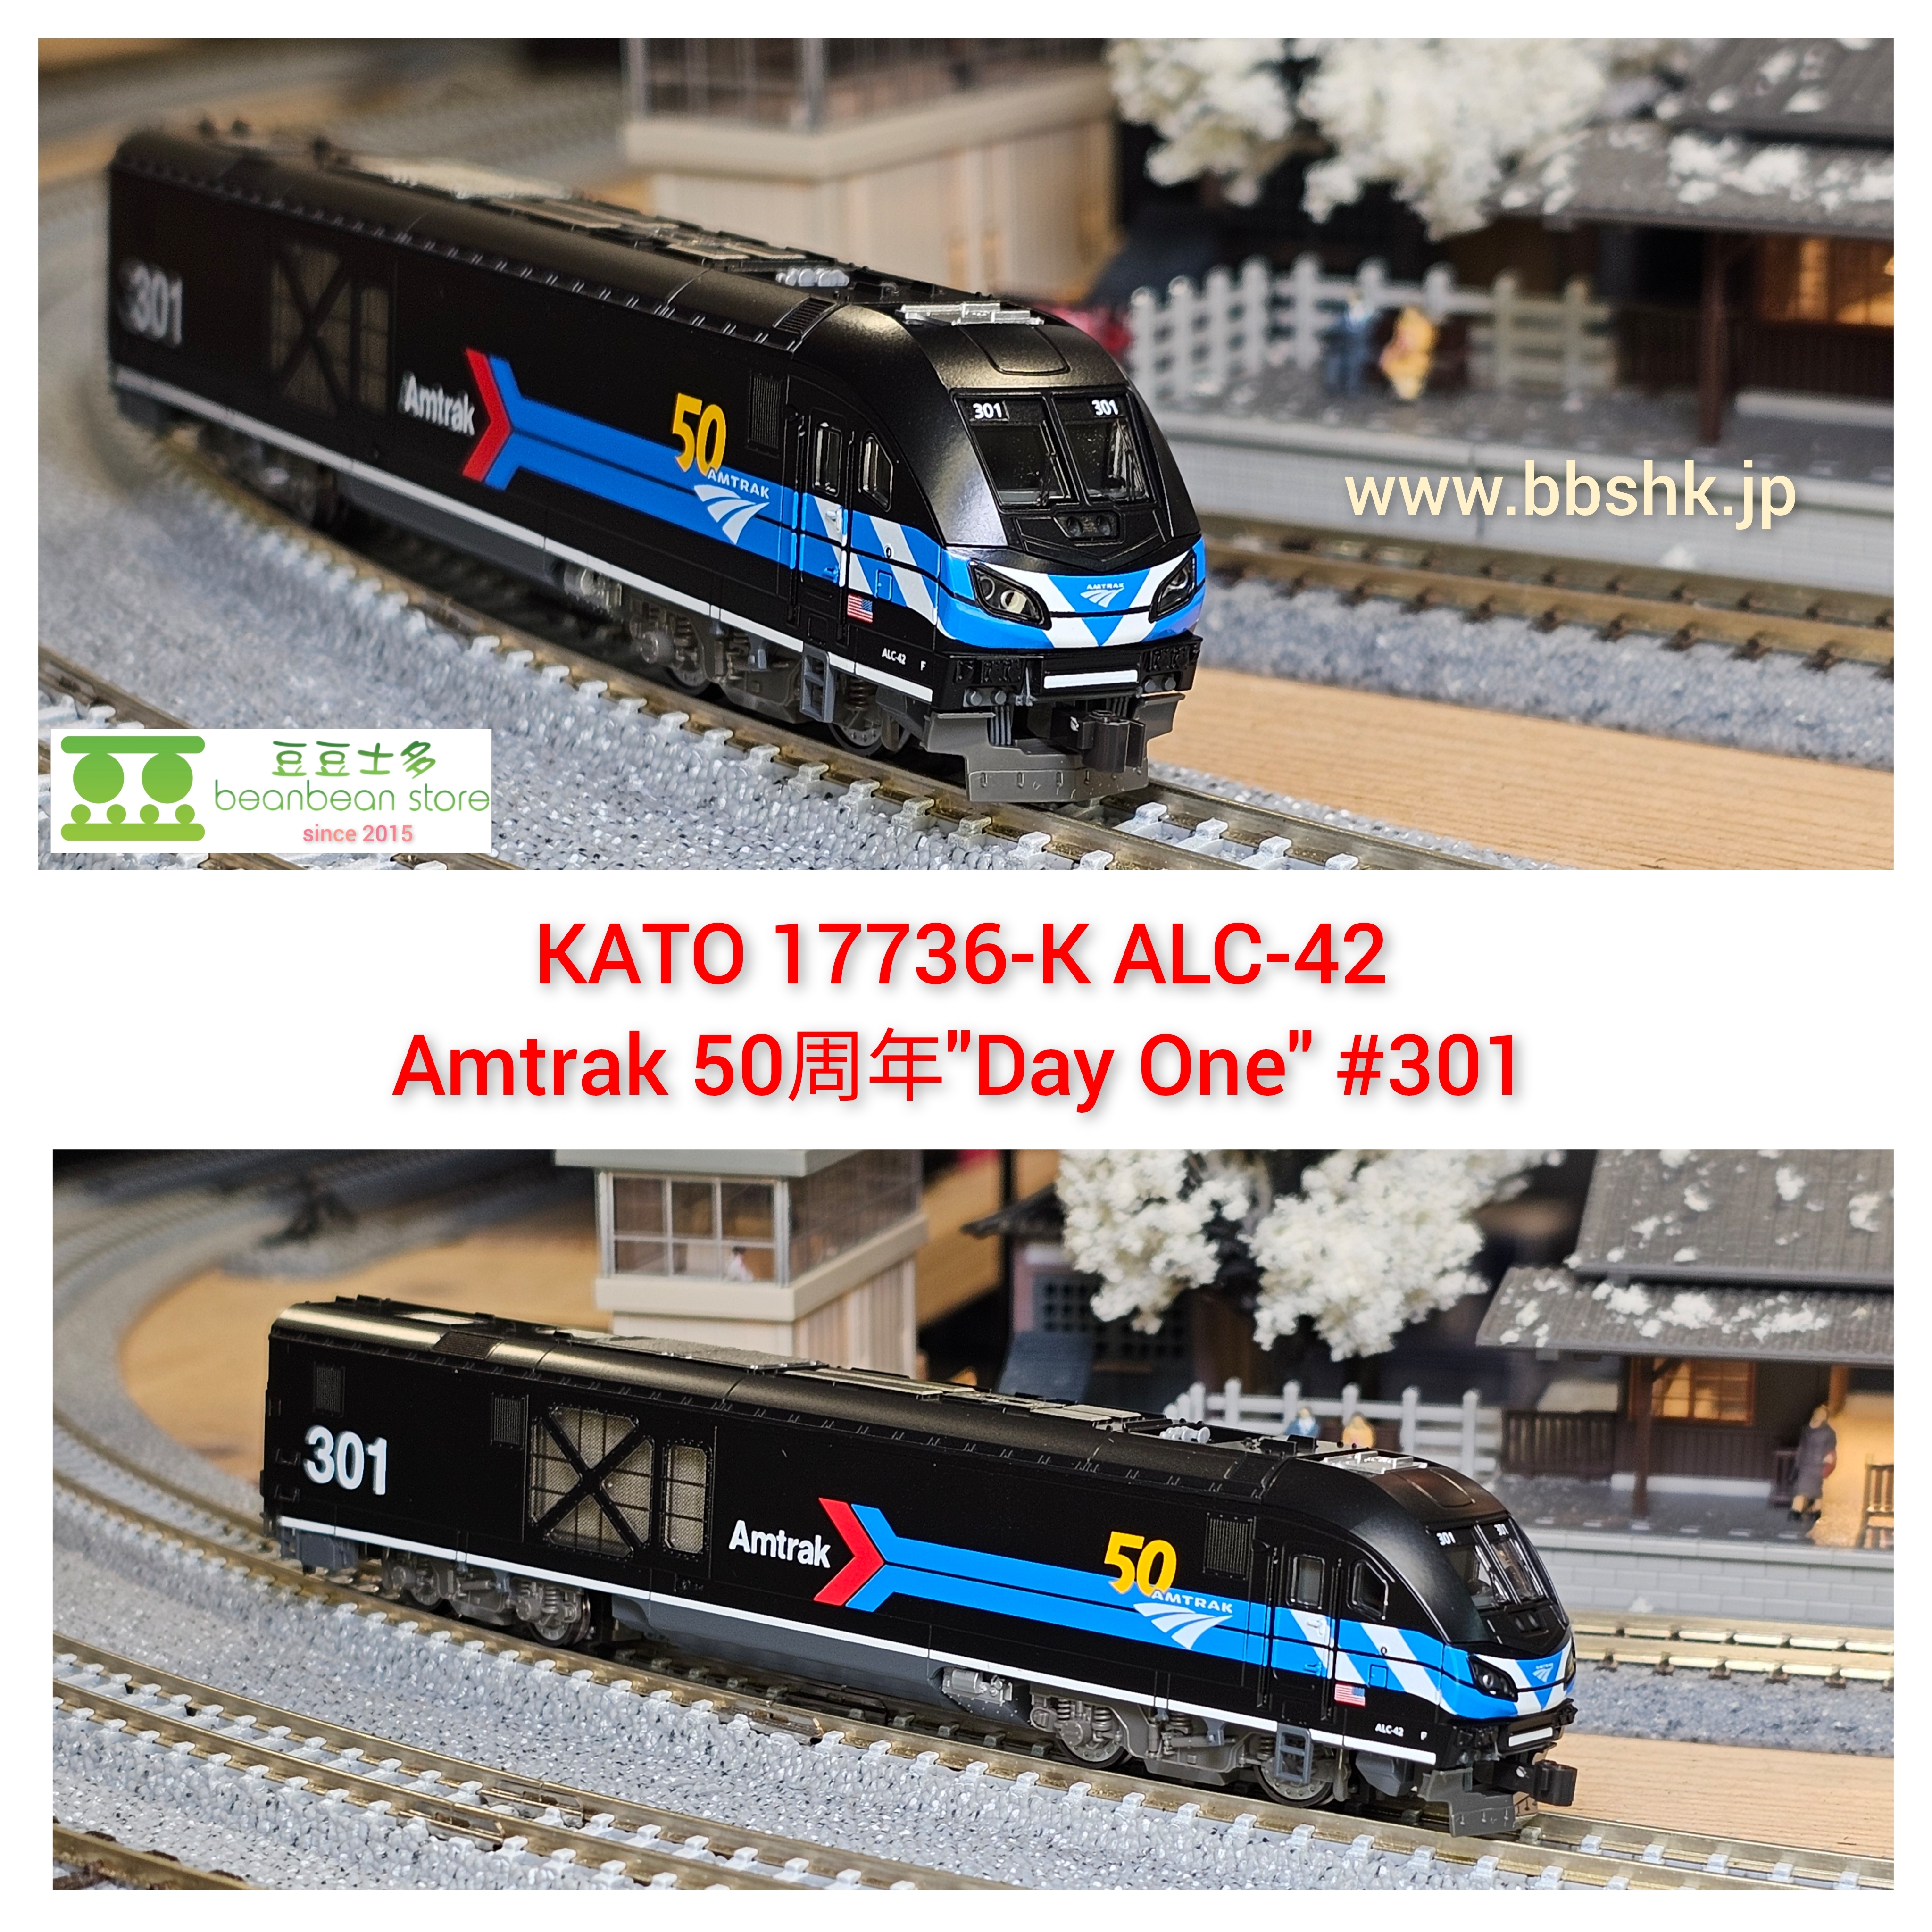 KATO 17736-K ALC-42 Amtrak 50周年